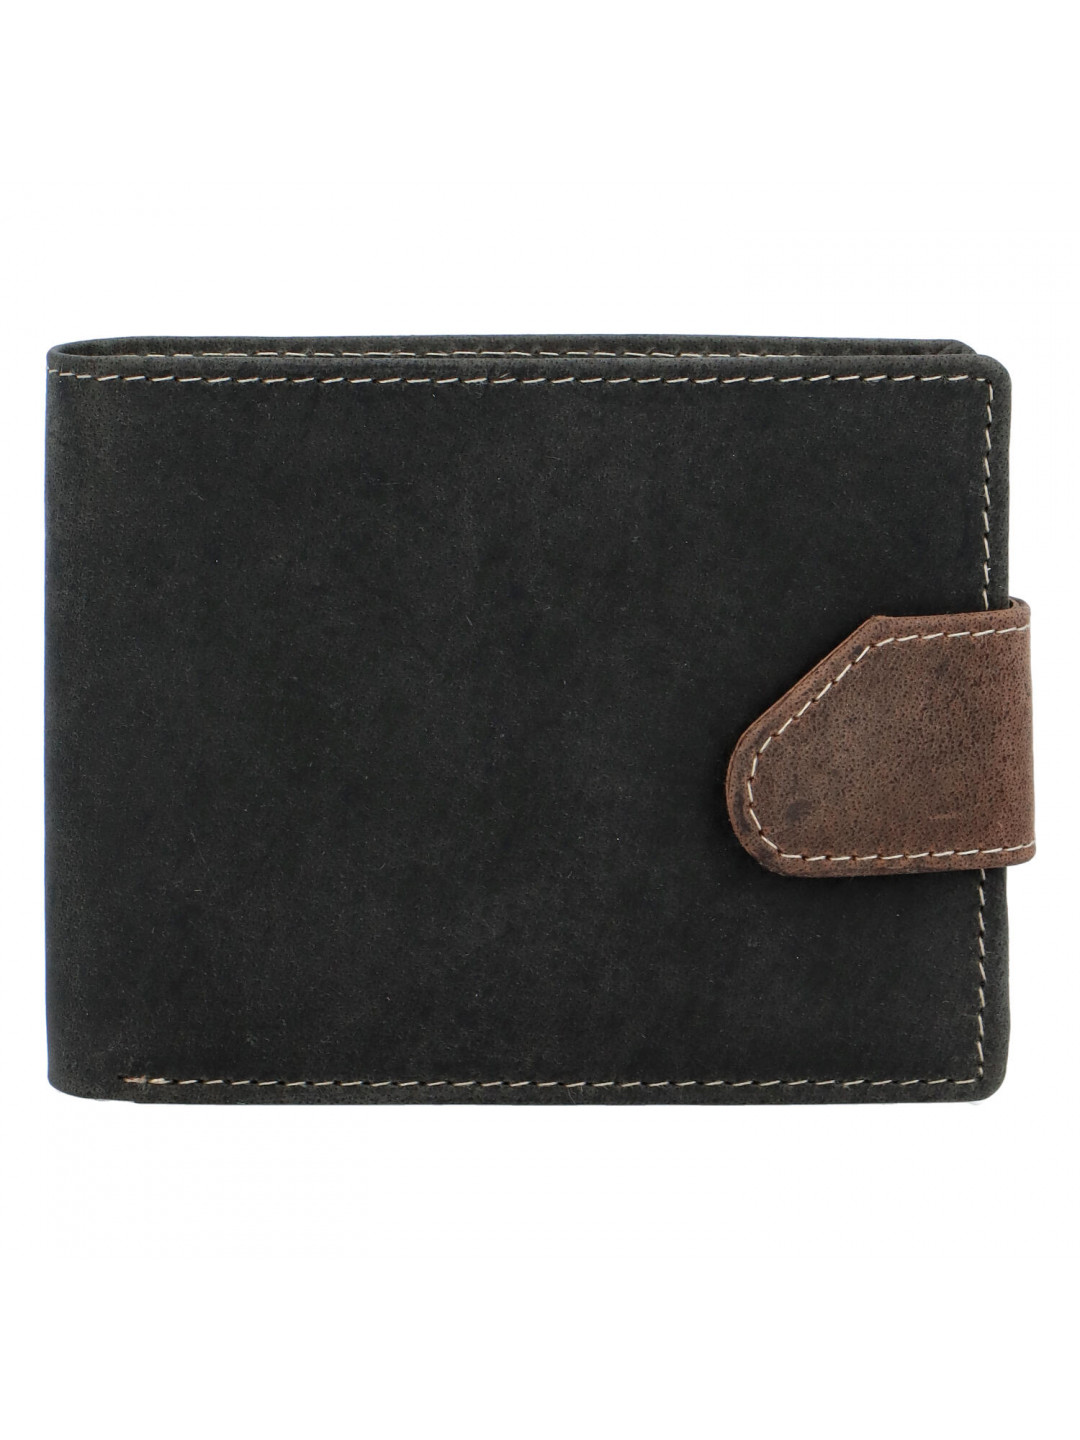 Broušená pánská černo hnědá kožená peněženka – Tomas 76VT